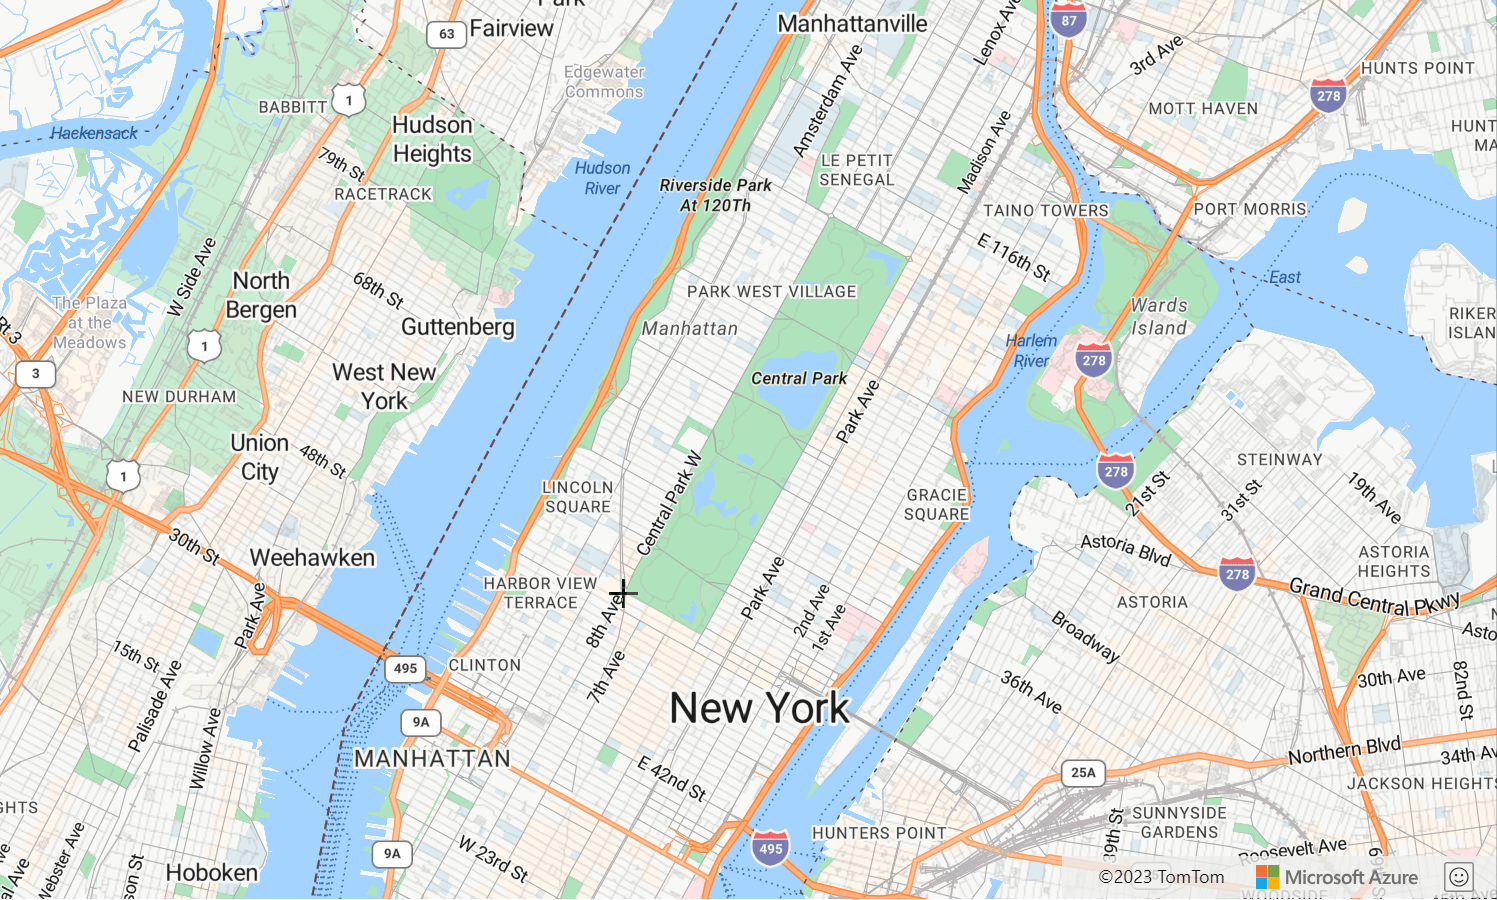 Снимок экрана: карта, показывающая центральный парк в Нью-Йорке, где менеджер рисунков демонстрируется линией рисования.